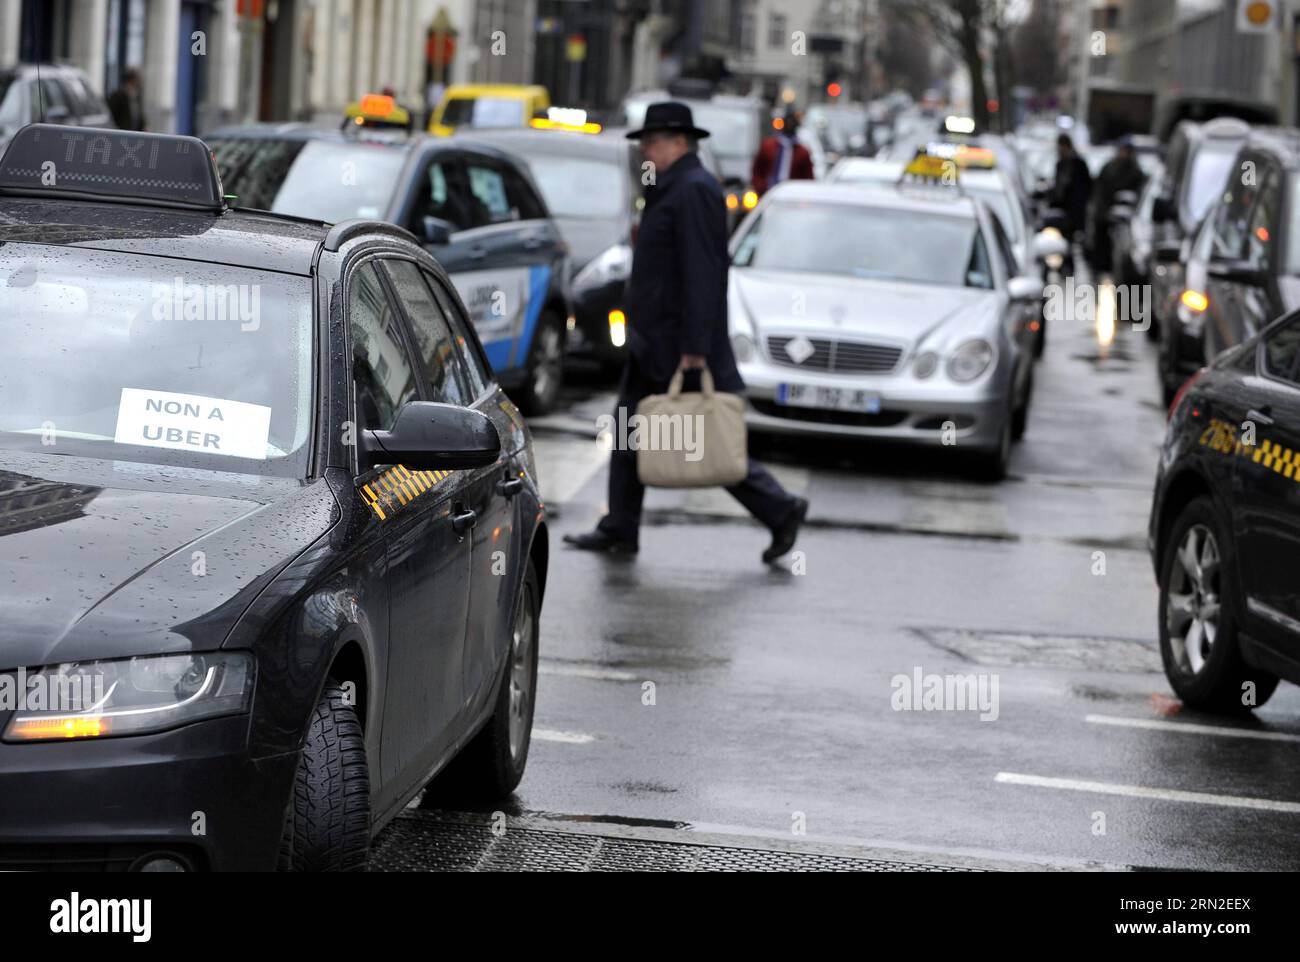 (150303) -- BRUXELLES, 3 marzo 2015 -- Una passeggiata pedonale tra i taxi in una strada di fronte al quartier generale dell'UE durante uno sciopero dei tassisti contro la società di condivisione di viaggi online Uber a Bruxelles, capitale del Belgio, 3 marzo 2015. ) BELGIO-BRUXELLES-TAXI-STRIKE YexPingfan PUBLICATIONxNOTxINxCHN Bruxelles 3 marzo 2015 un pedonale cammina tra i taxi IN una strada di fronte al quartier generale dell'UE durante un taxi Drivers Strike Against Online Ride Sharing Company sopra a Bruxelles capitale del Belgio 3 marzo 2015 Belgio Bruxelles taxi Strike PUBLICATIONxNOTxINxCHN Foto Stock